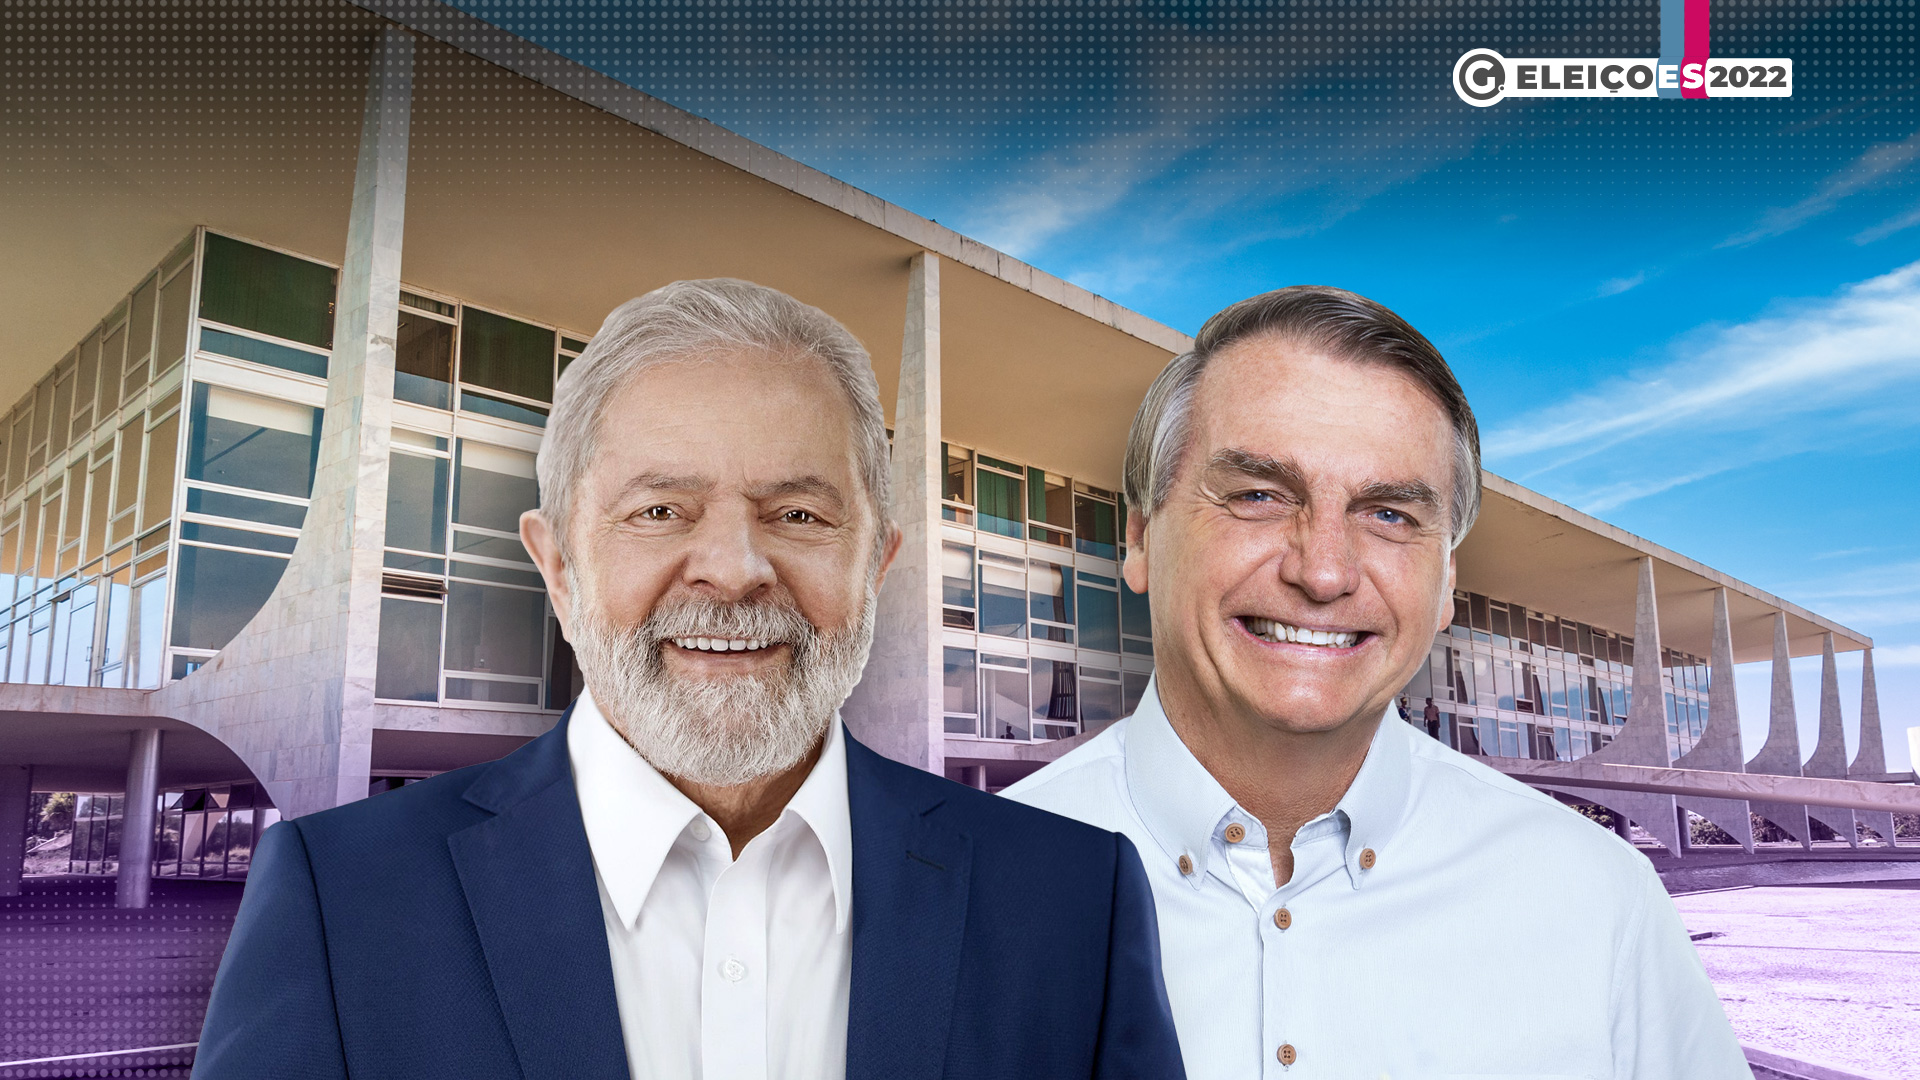 O ex-presidente Luiz Inácio Lula da Silva (PT) obteve 48% dos votos e o presidente Jair Bolsonaro (PL), 43%. A nova votação será no dia 30 de outubro